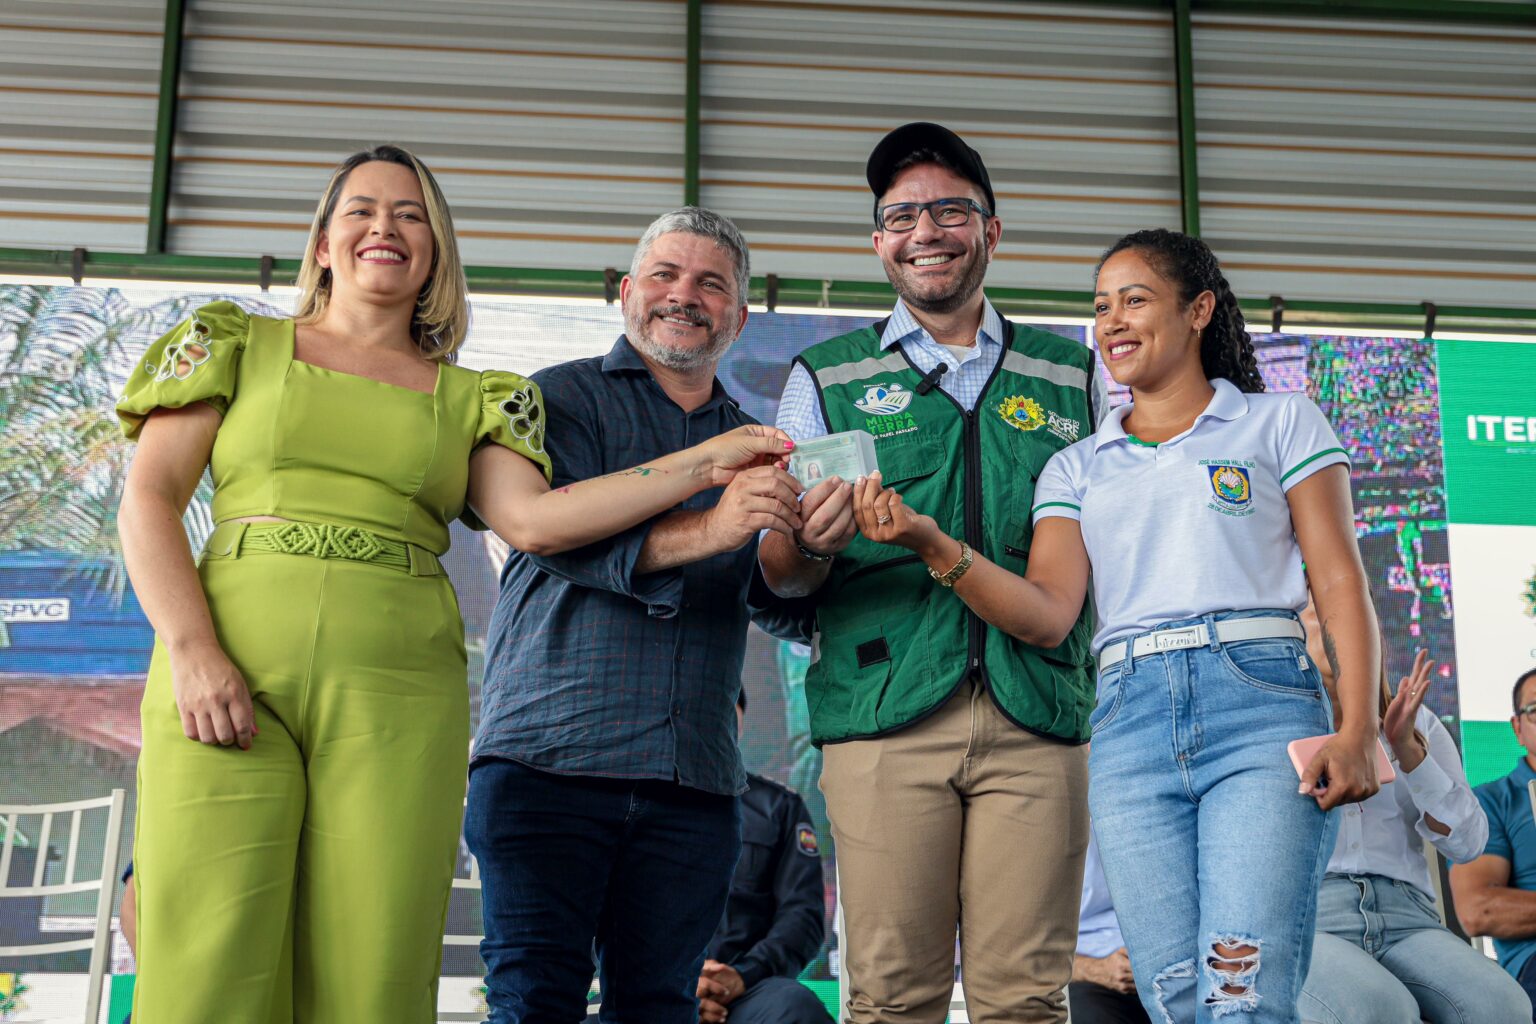 Governo do Acre entrega carteiras de habilitação e capacetes para mototaxistas de Brasileia e Epitaciolândia, promovendo inclusão social e segurança